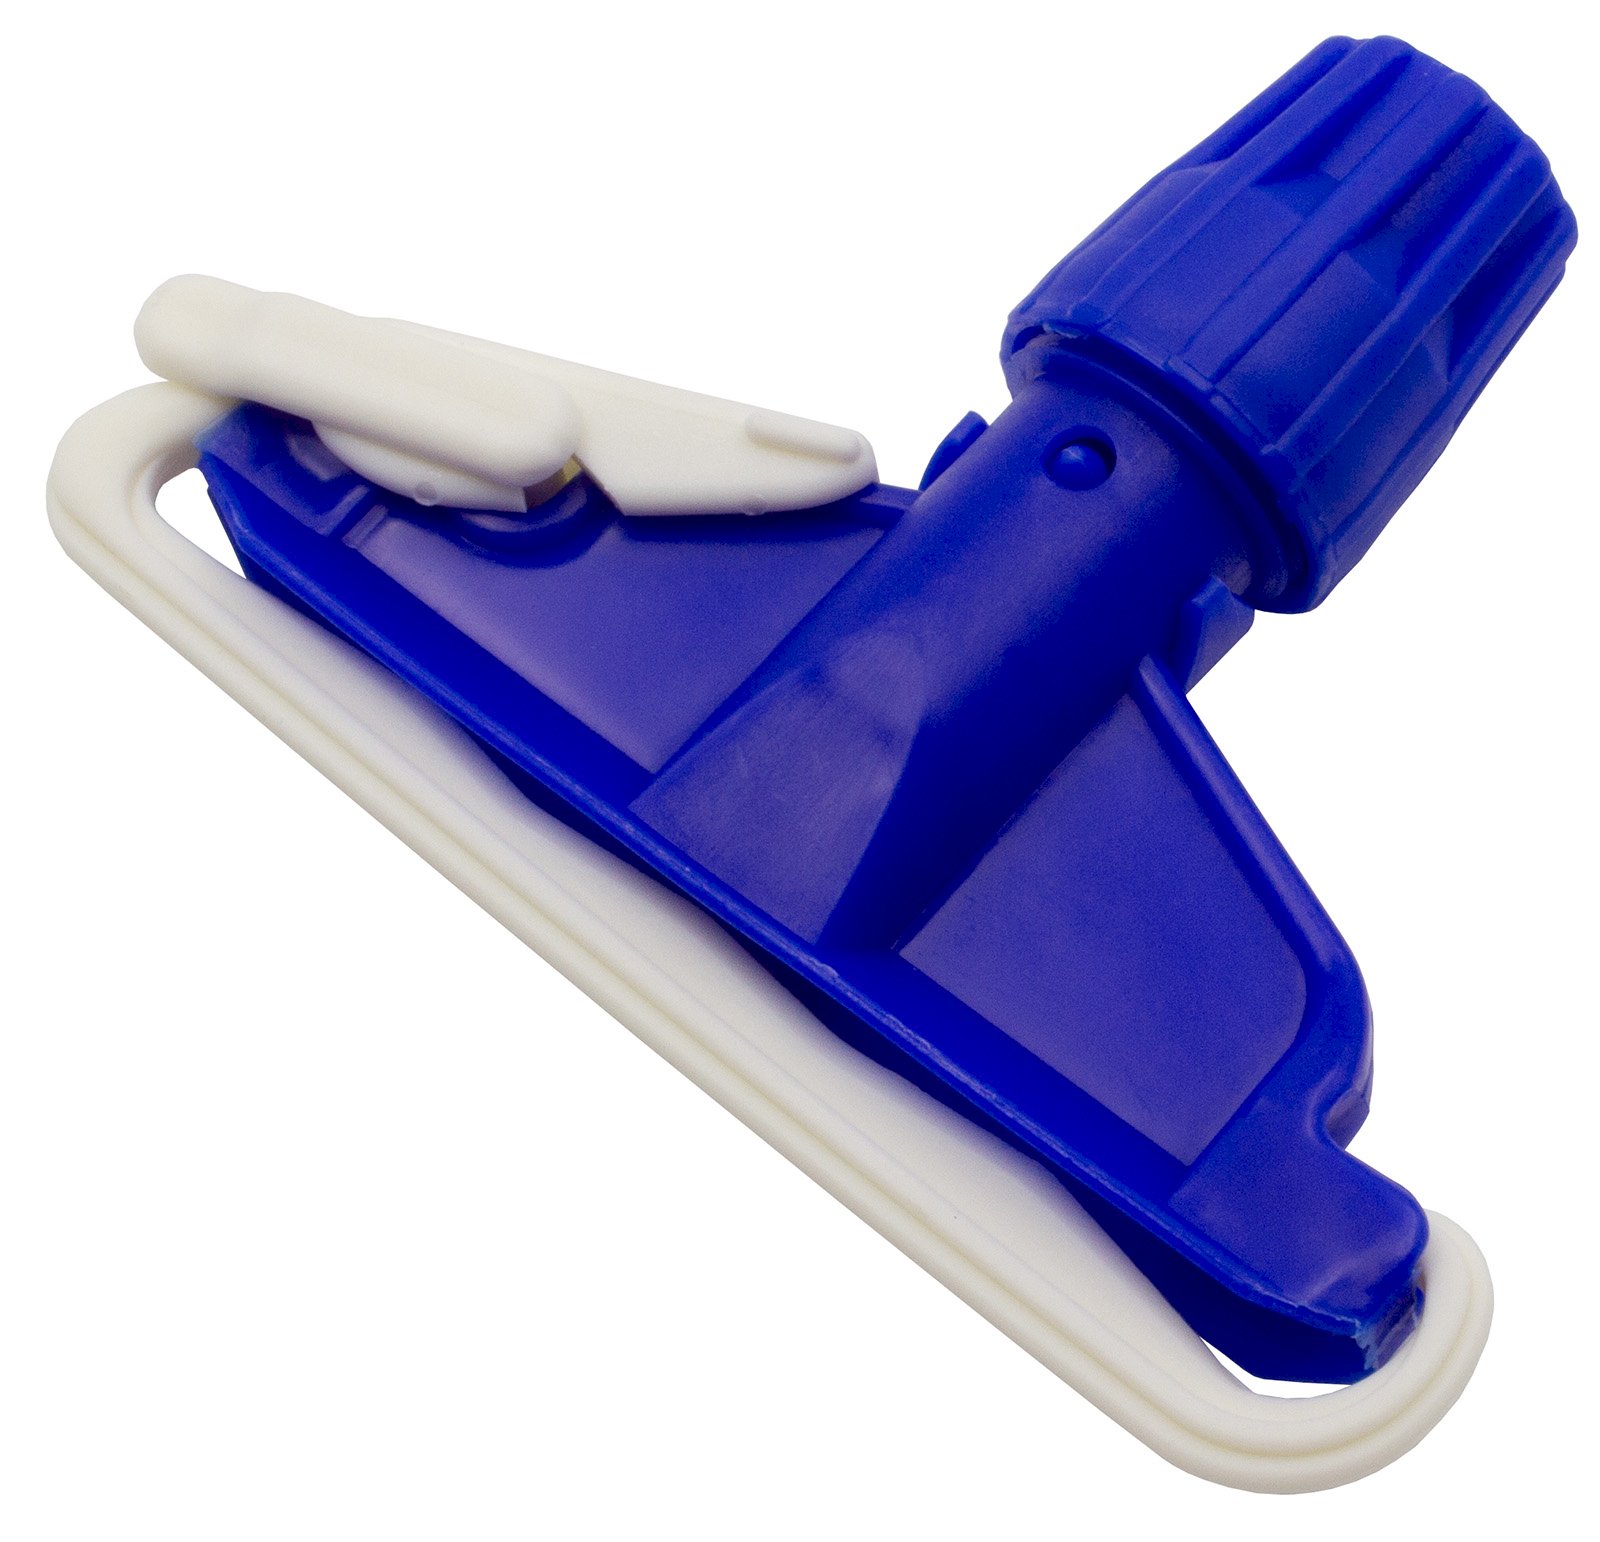 Зажим для мопа кентукки Optiline применяется для фиксации мопа кентукки. Выполнен из противоударного пластика синего цвета, устойчив к агрессивным моющим средствам. Предназначен для проведения влажной уборки внутренних помещений. Подходит для рукояток с фиксаторным креплением. Поставляется в индивидуальном прозрачном пакете.